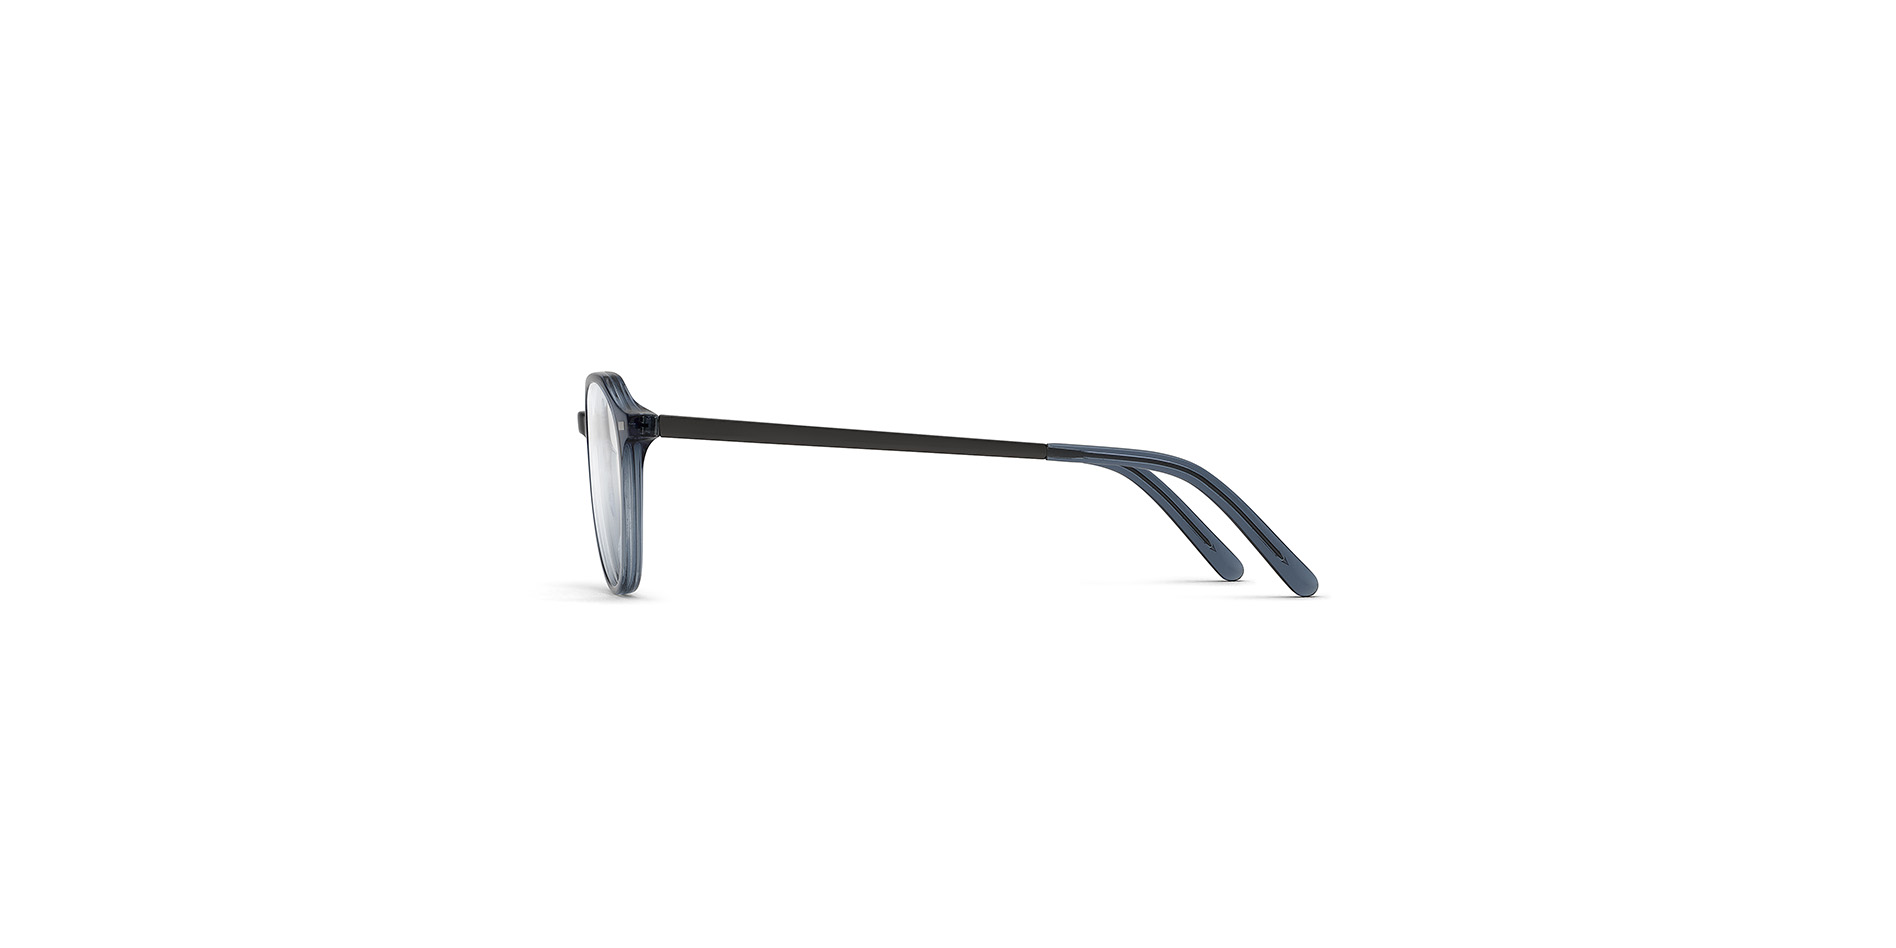 Klassische Damen-Korrektionsbrille aus Kunststoff in Pantoform, der Bügel ist mit einem Flexscharnier ausgestattet,  BC 012 FLEX CL